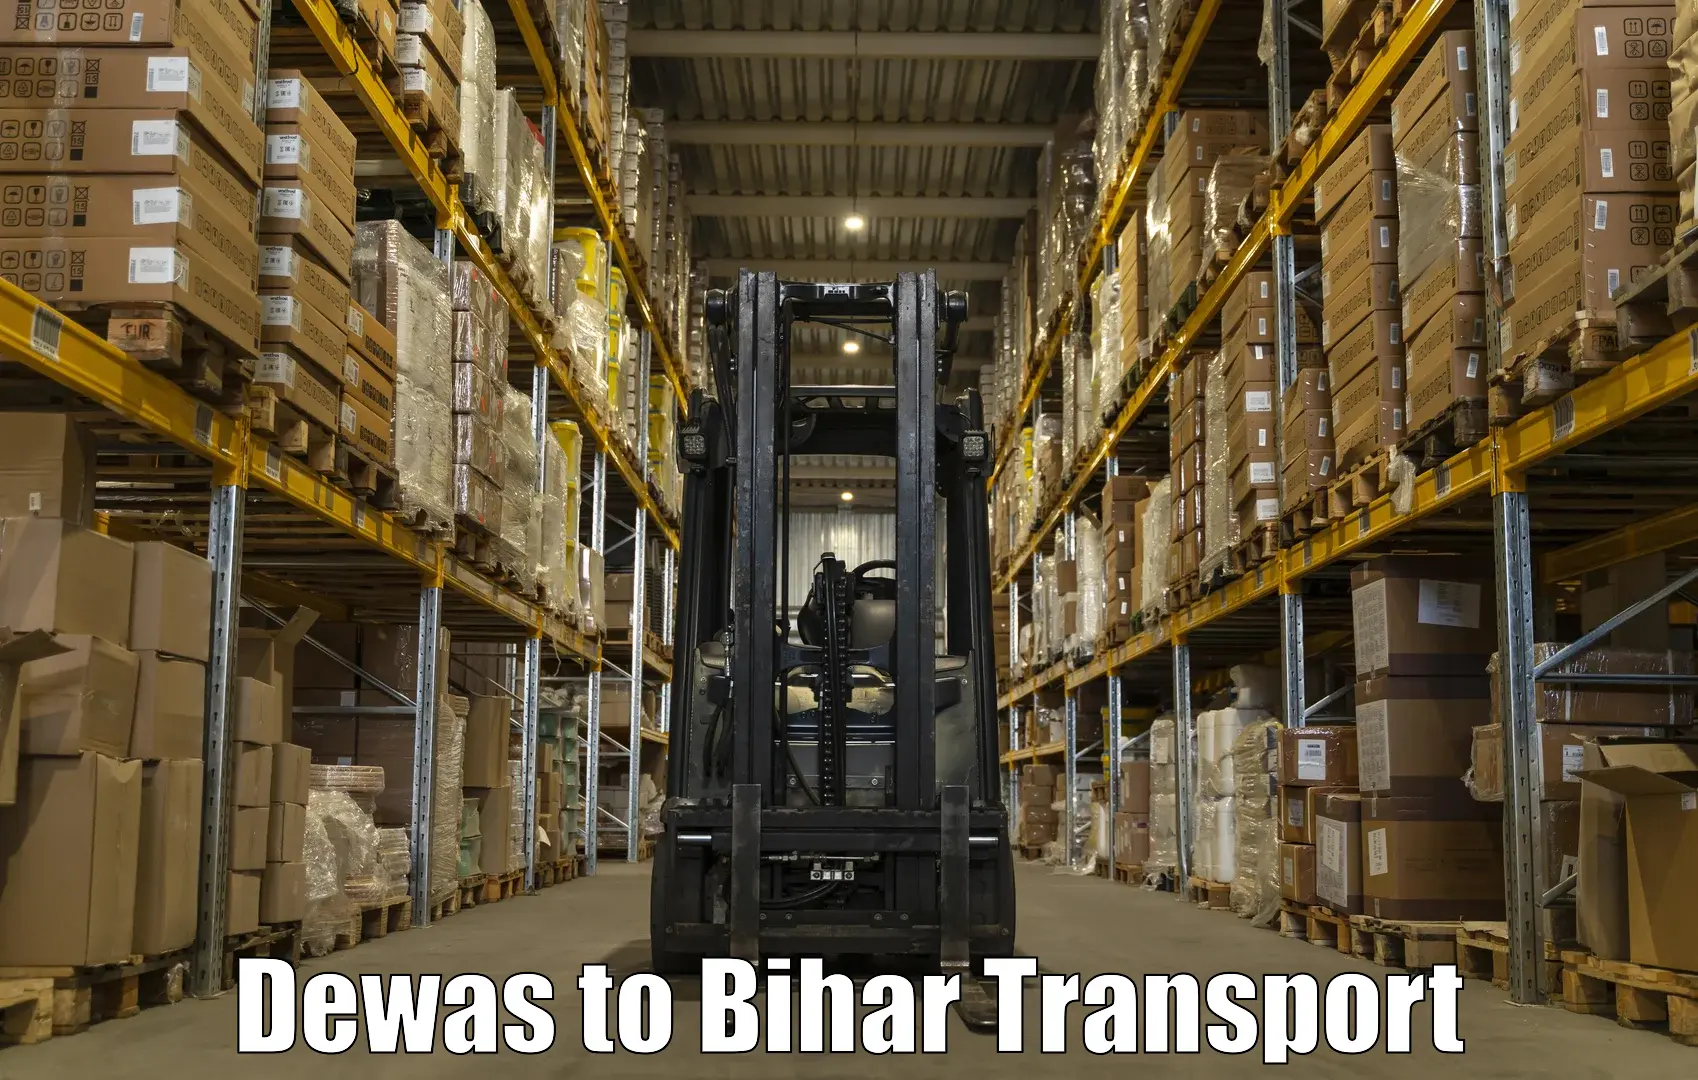 Furniture transport service Dewas to Giddha